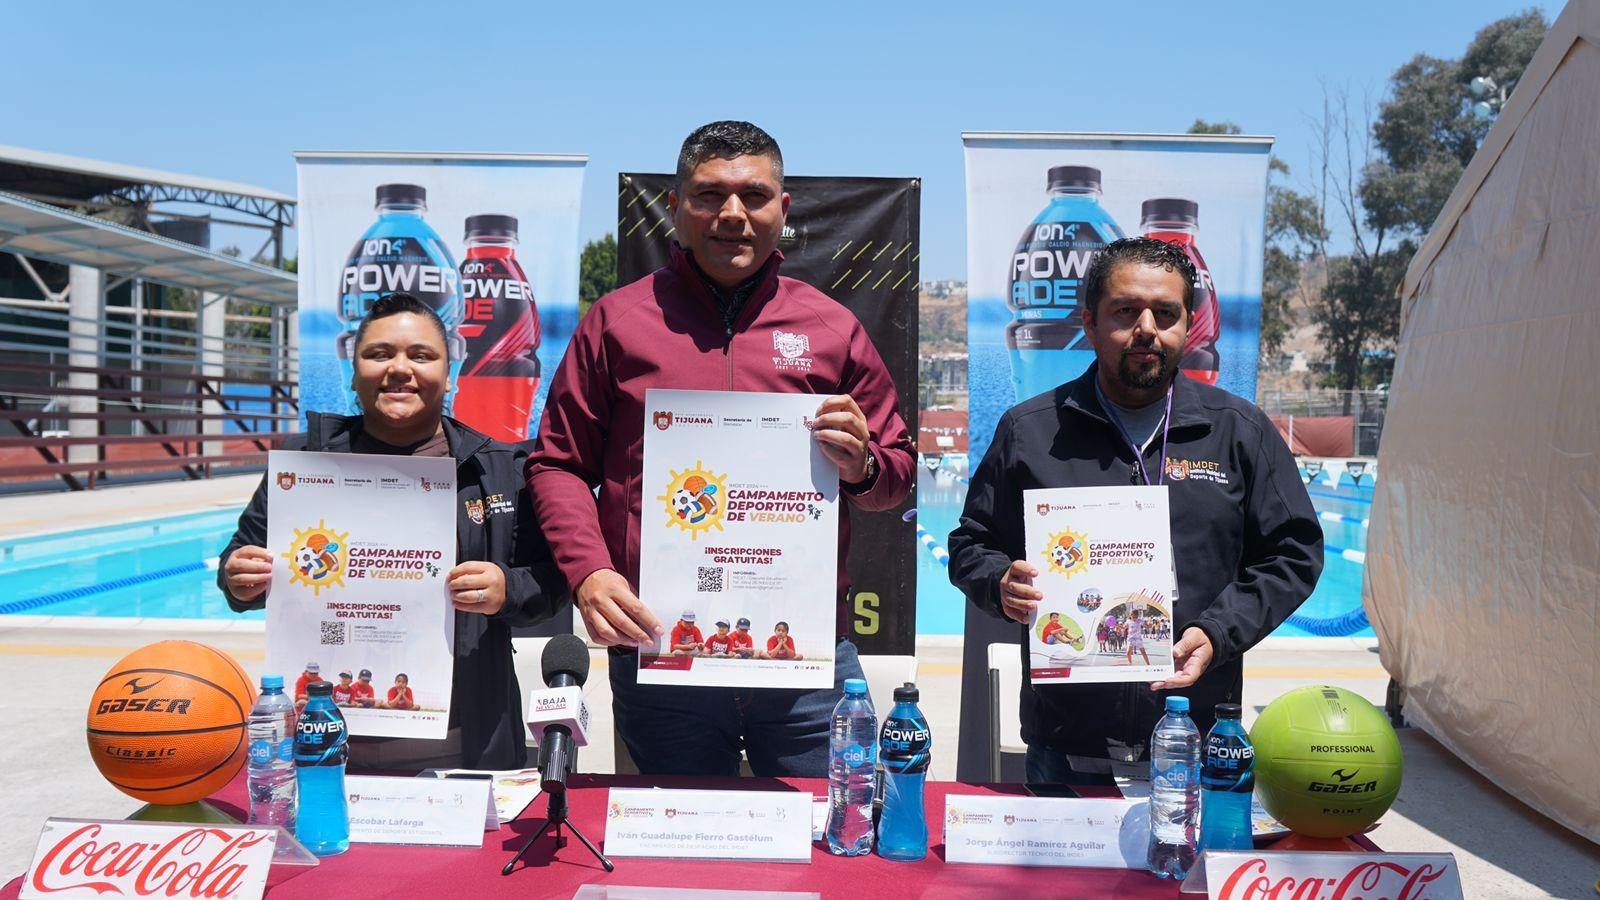 Por segunda ocasión, ayuntamiento de Tijuana organiza campamento deportivo de verano gratuito